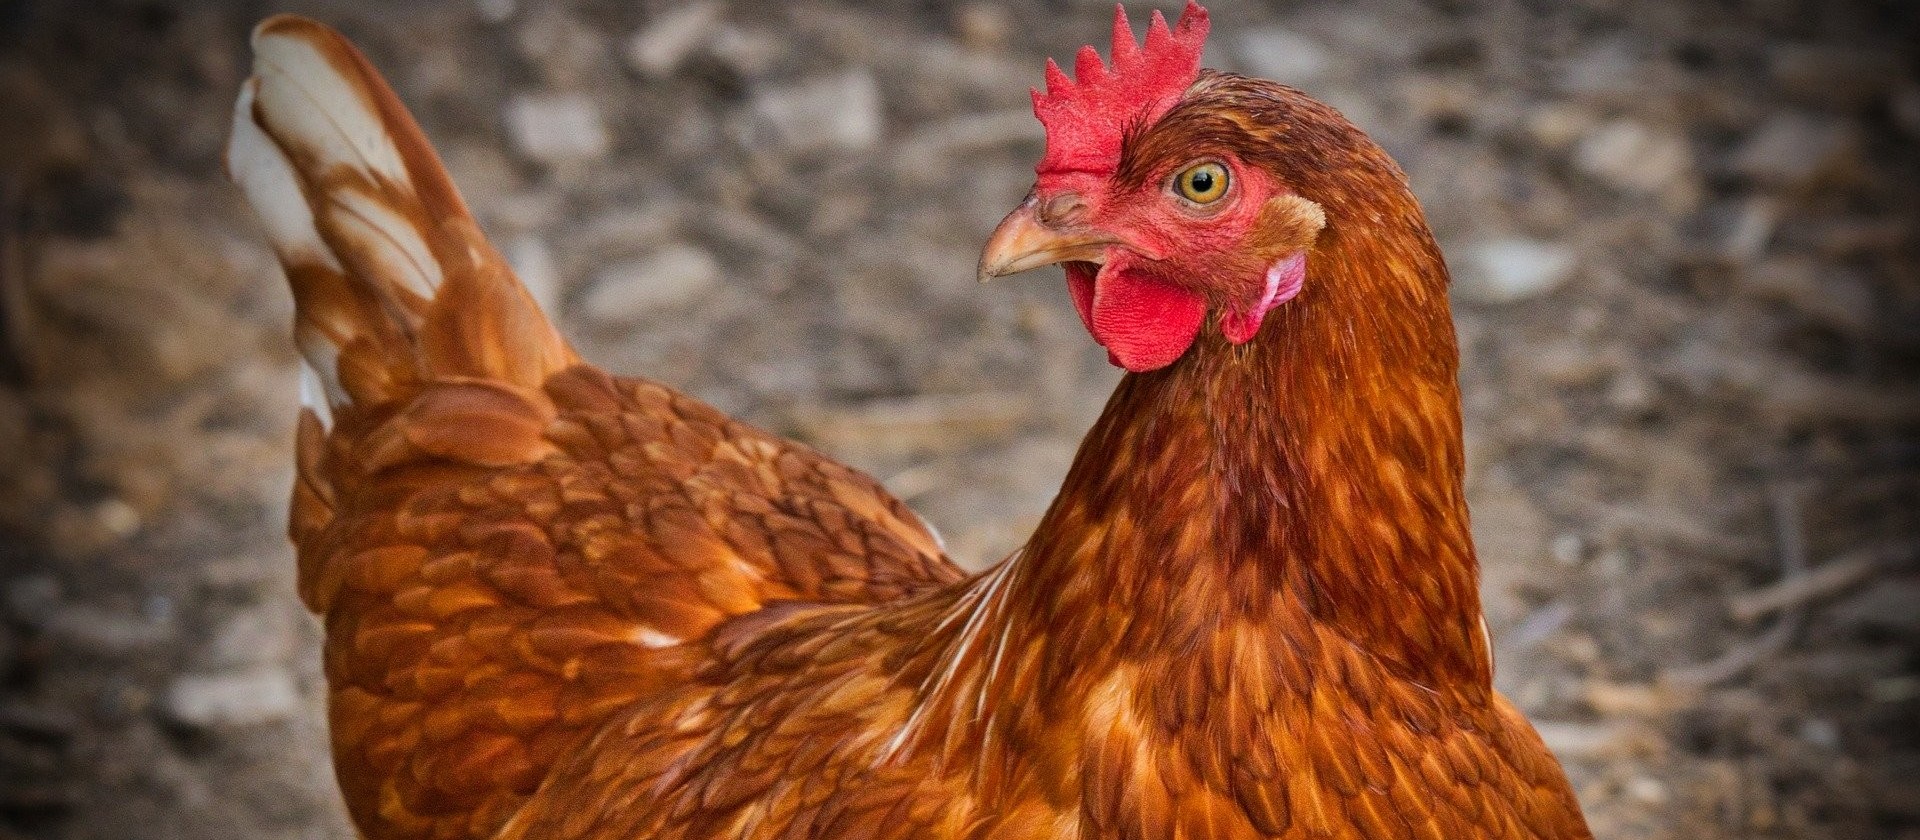 Indústrias avícolas investiram R$ 100 milhões em ações contra a Covid